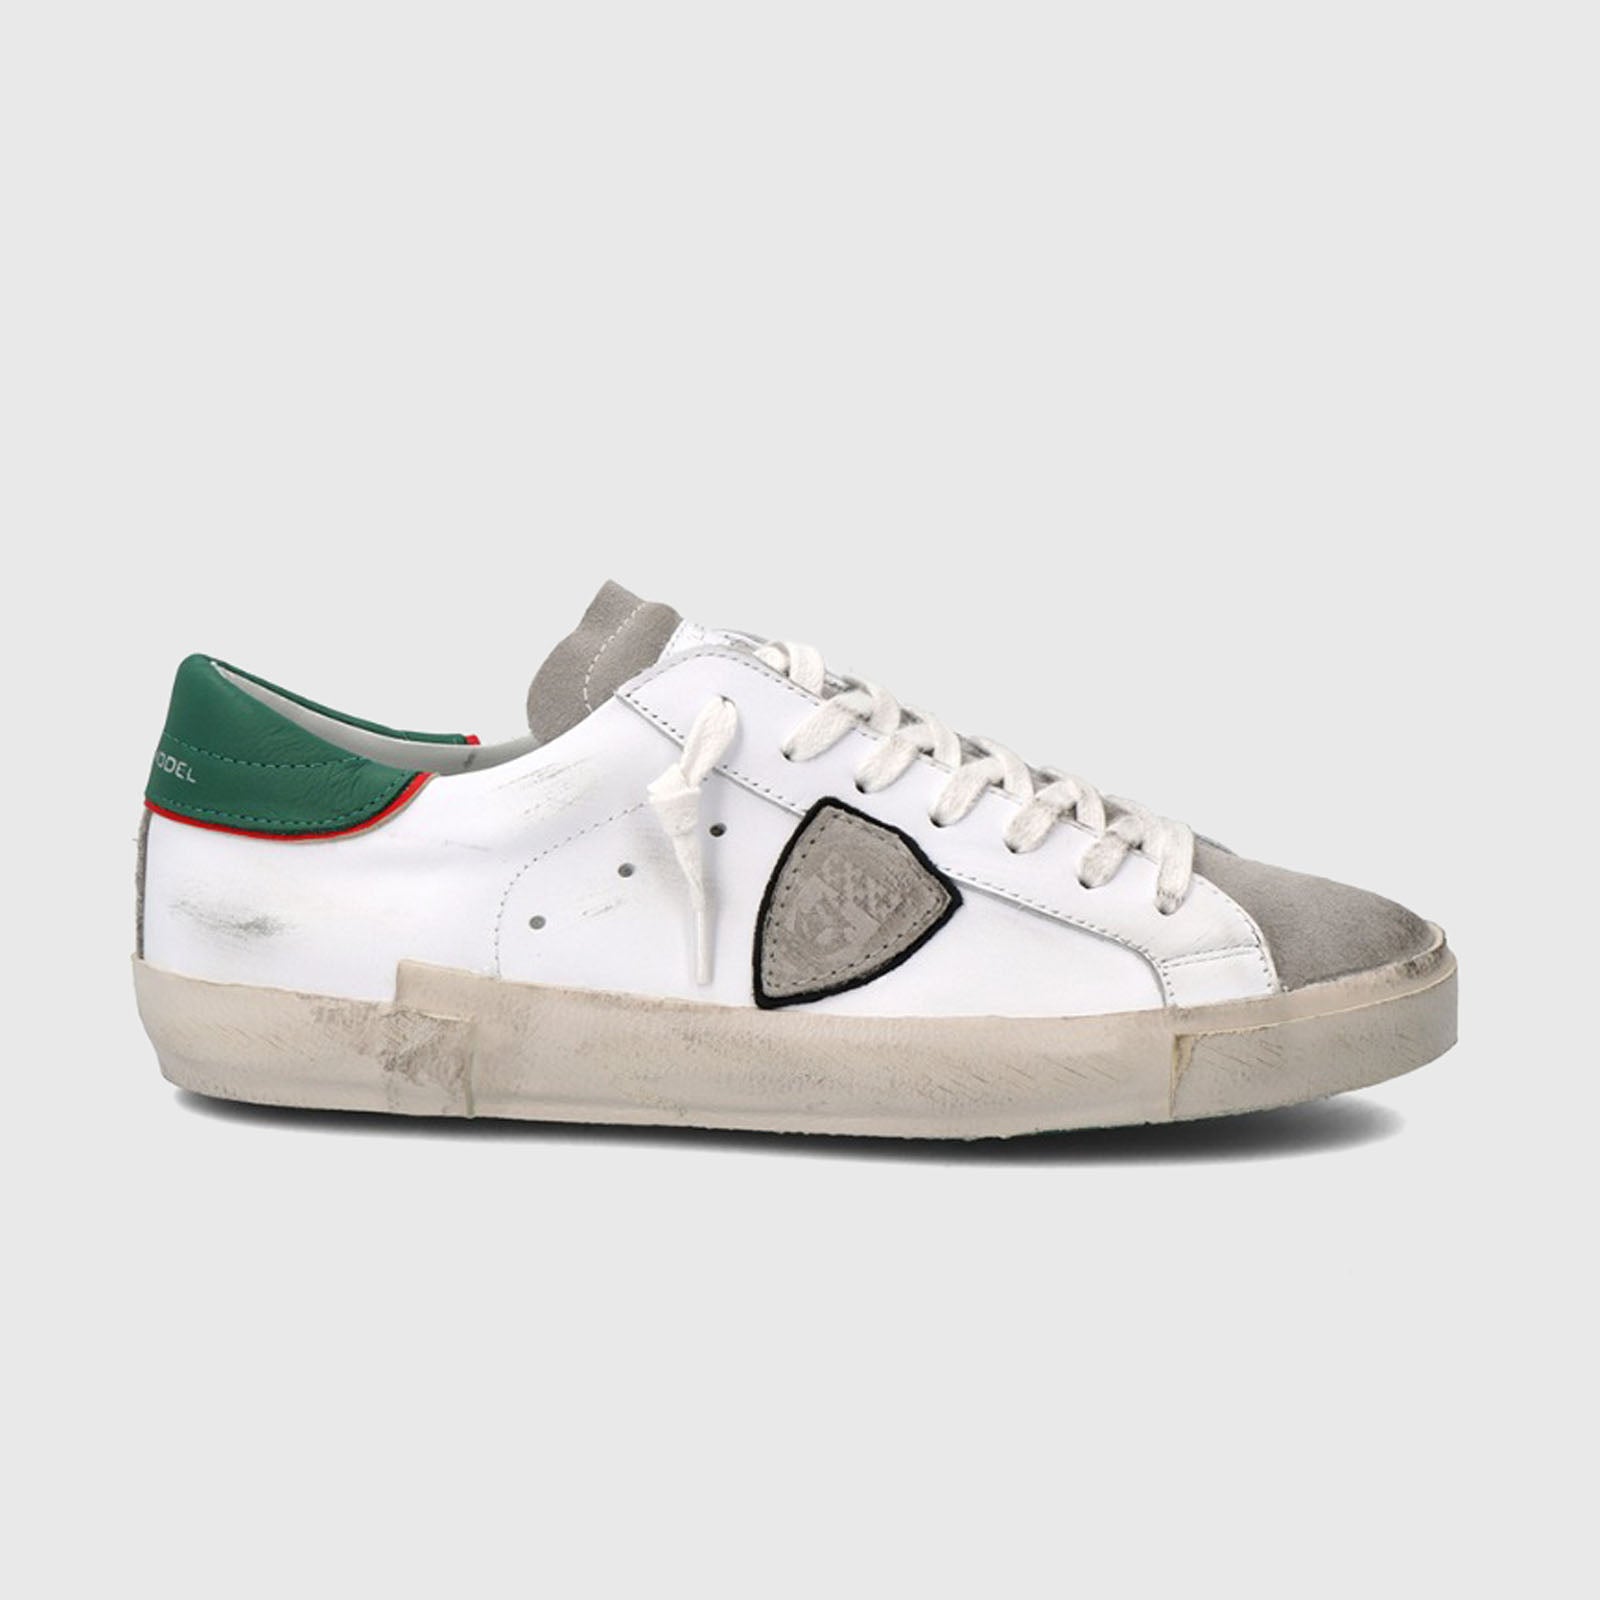 Philippe Model Sneakers PRSX Veau Vintage Bianco/Verde in Pelle - 8